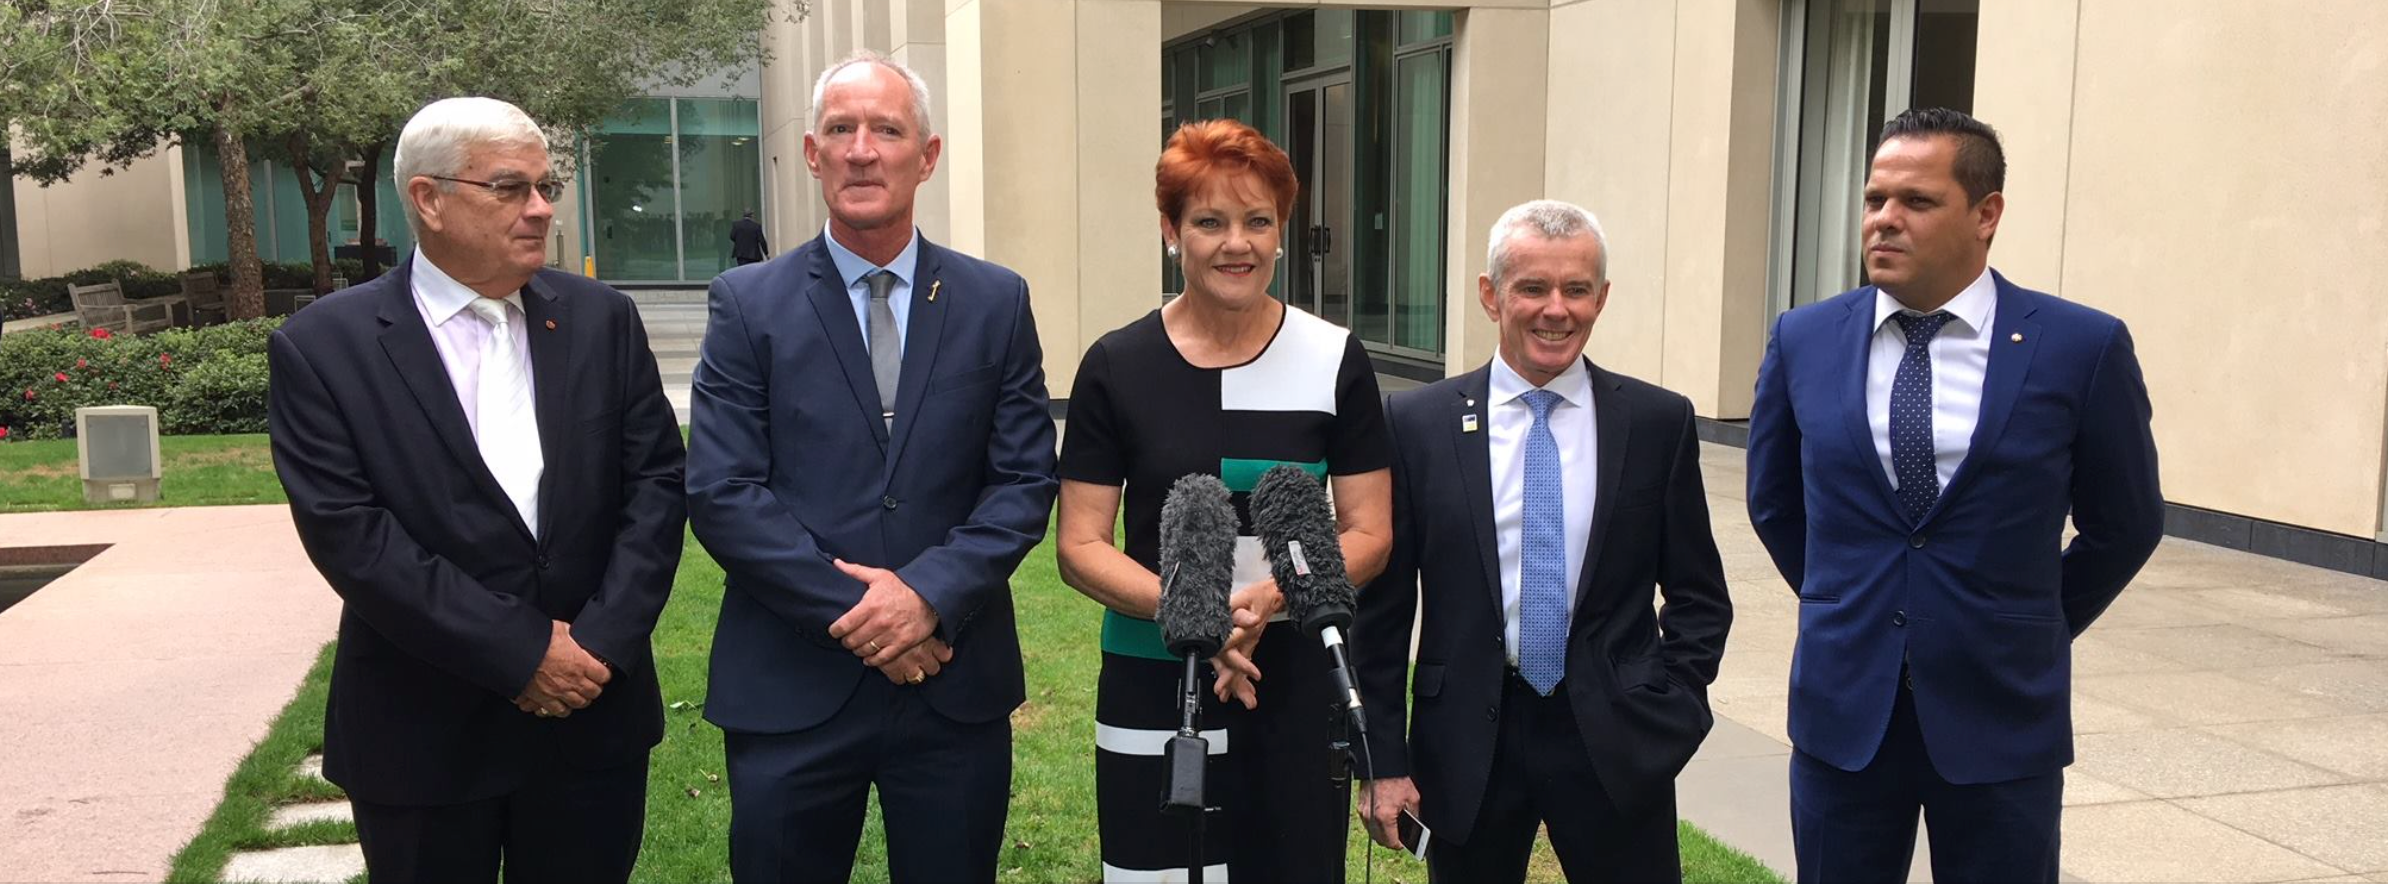 Pauline Hanson announces Queensland Senate team